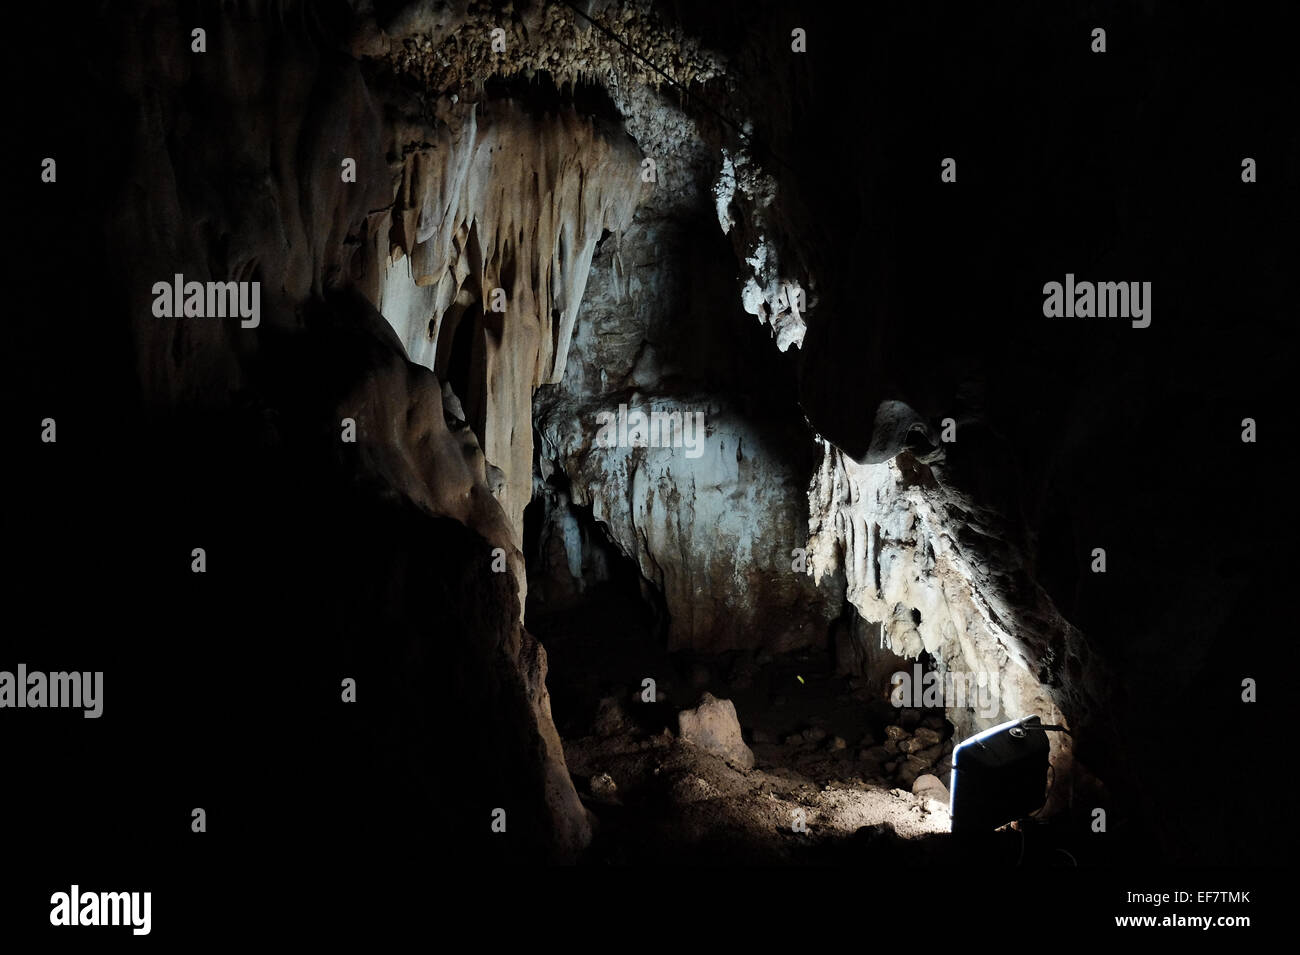 Manot Grotte, Israël. 28 janvier, 2015. 55 000 ans d'un crâne humain découvert dans la grotte de Manot dans l'ouest de la Galilée prouve, selon les scientifiques, que l'homme moderne (Homo sapiens) a migré depuis l'Afrique vers le reste du monde il y a environ 65 000 ans. Chercheurs considèrent le crâne, la première preuve fossilisée à l'extérieur de l'Afrique, 'l'une des plus importantes découvertes dans l'étude de l'évolution humaine. Credit : Alon Nir/Alamy Live News Banque D'Images